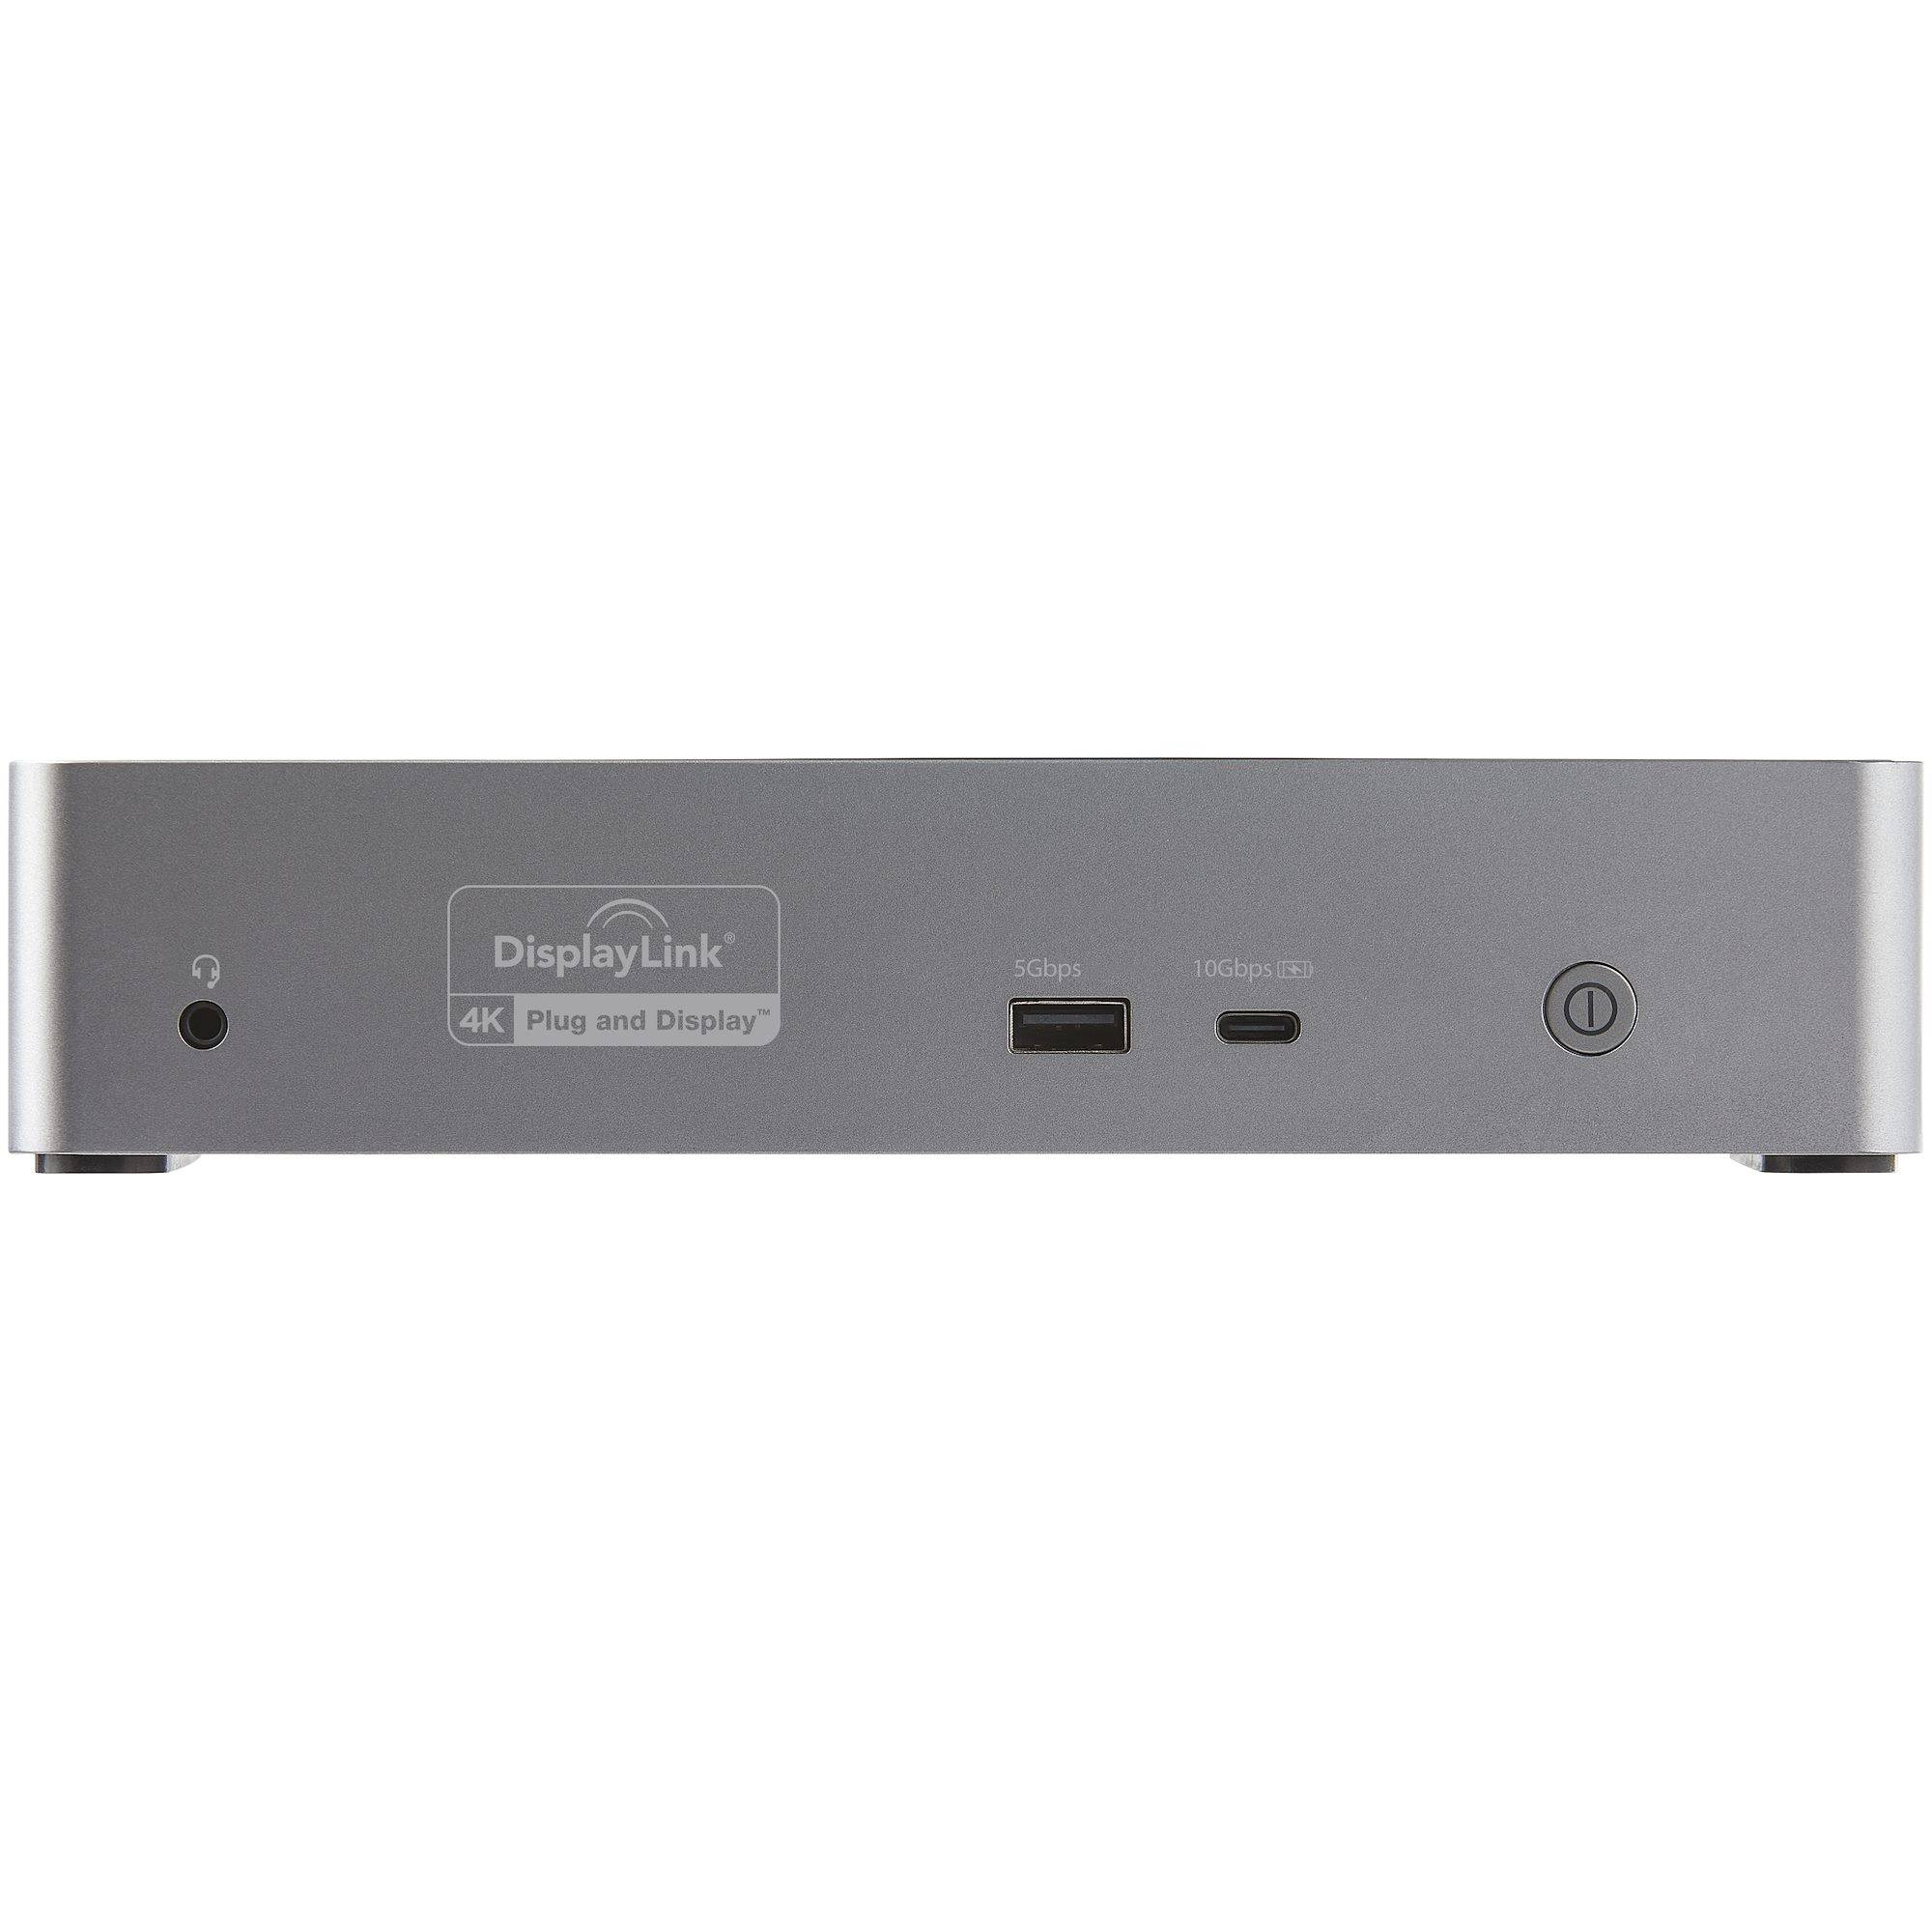 Rca Informatique - image du produit : UNIVERSAL USB-C DOCK QUAD VIDEO QUAD 4K 60HZ DP OR HDMI 100W PD